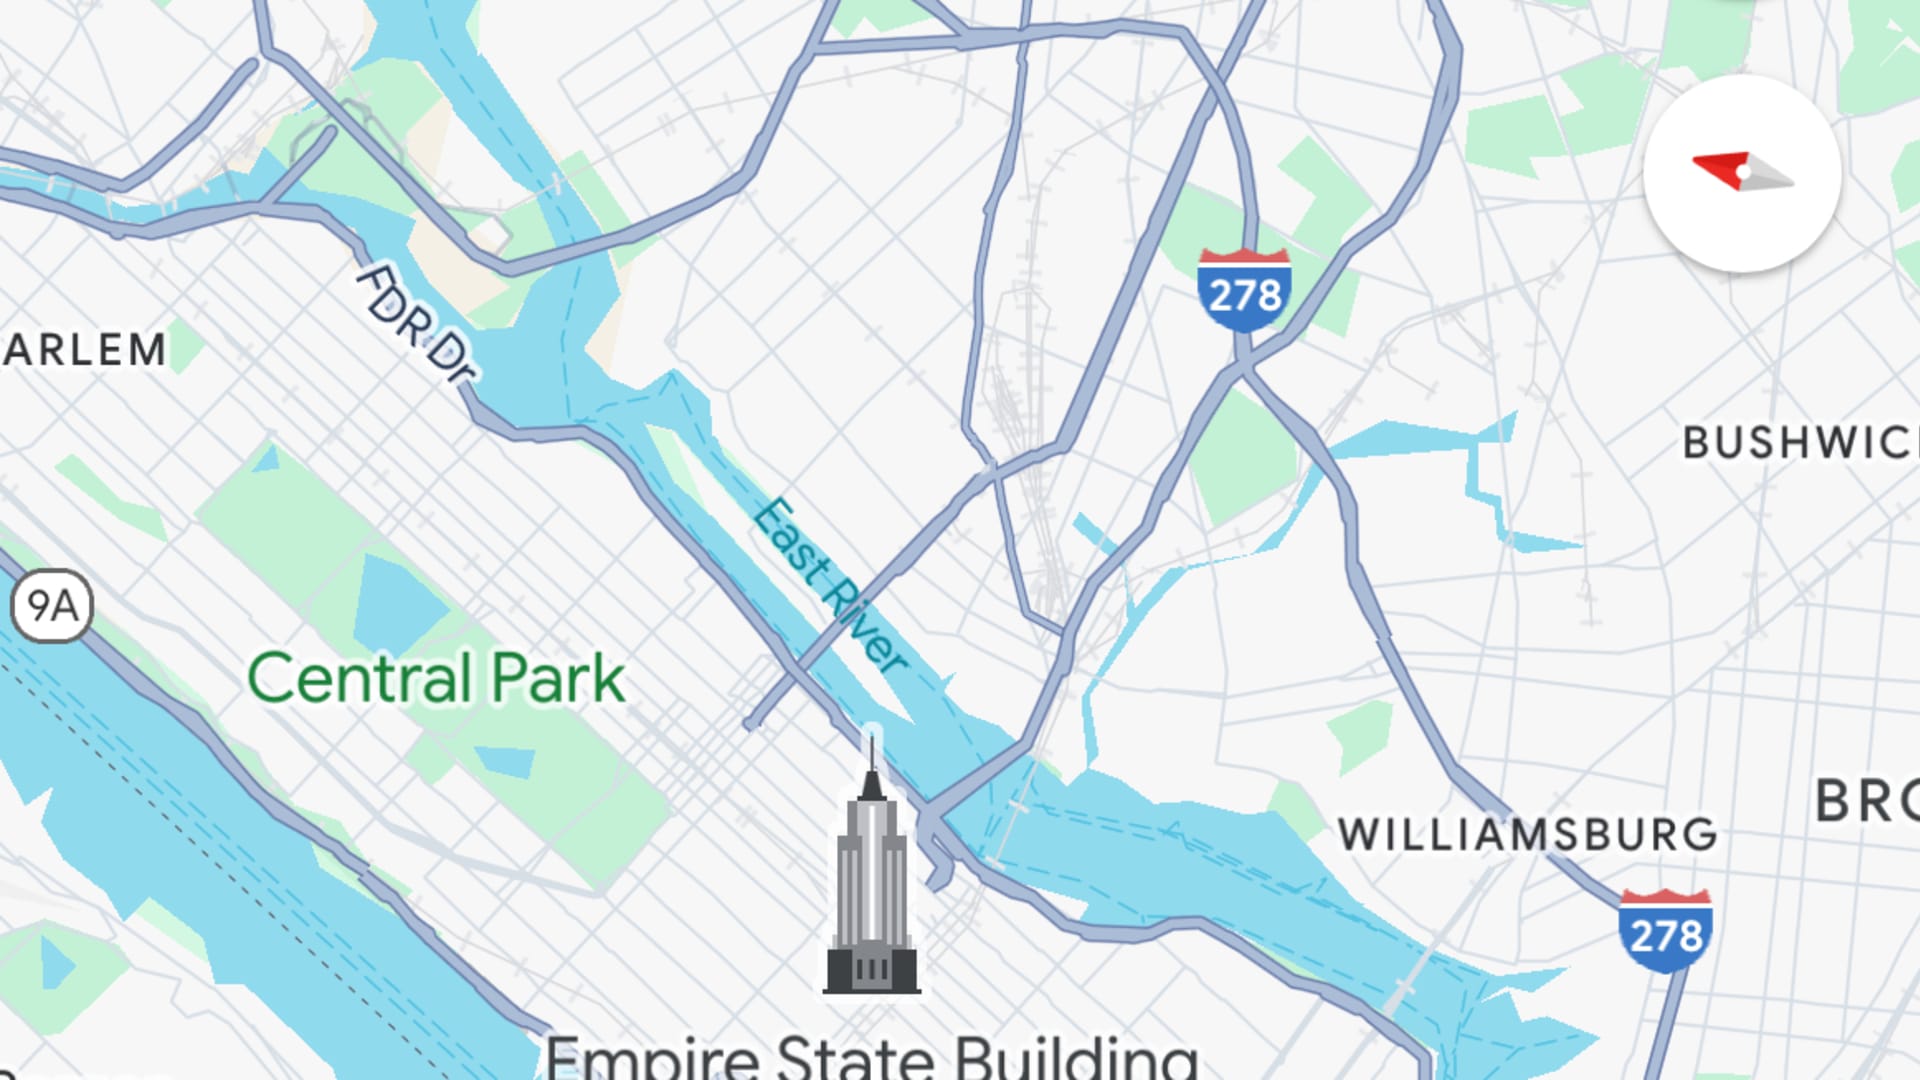 Google Maps new colors upset some, including former designer